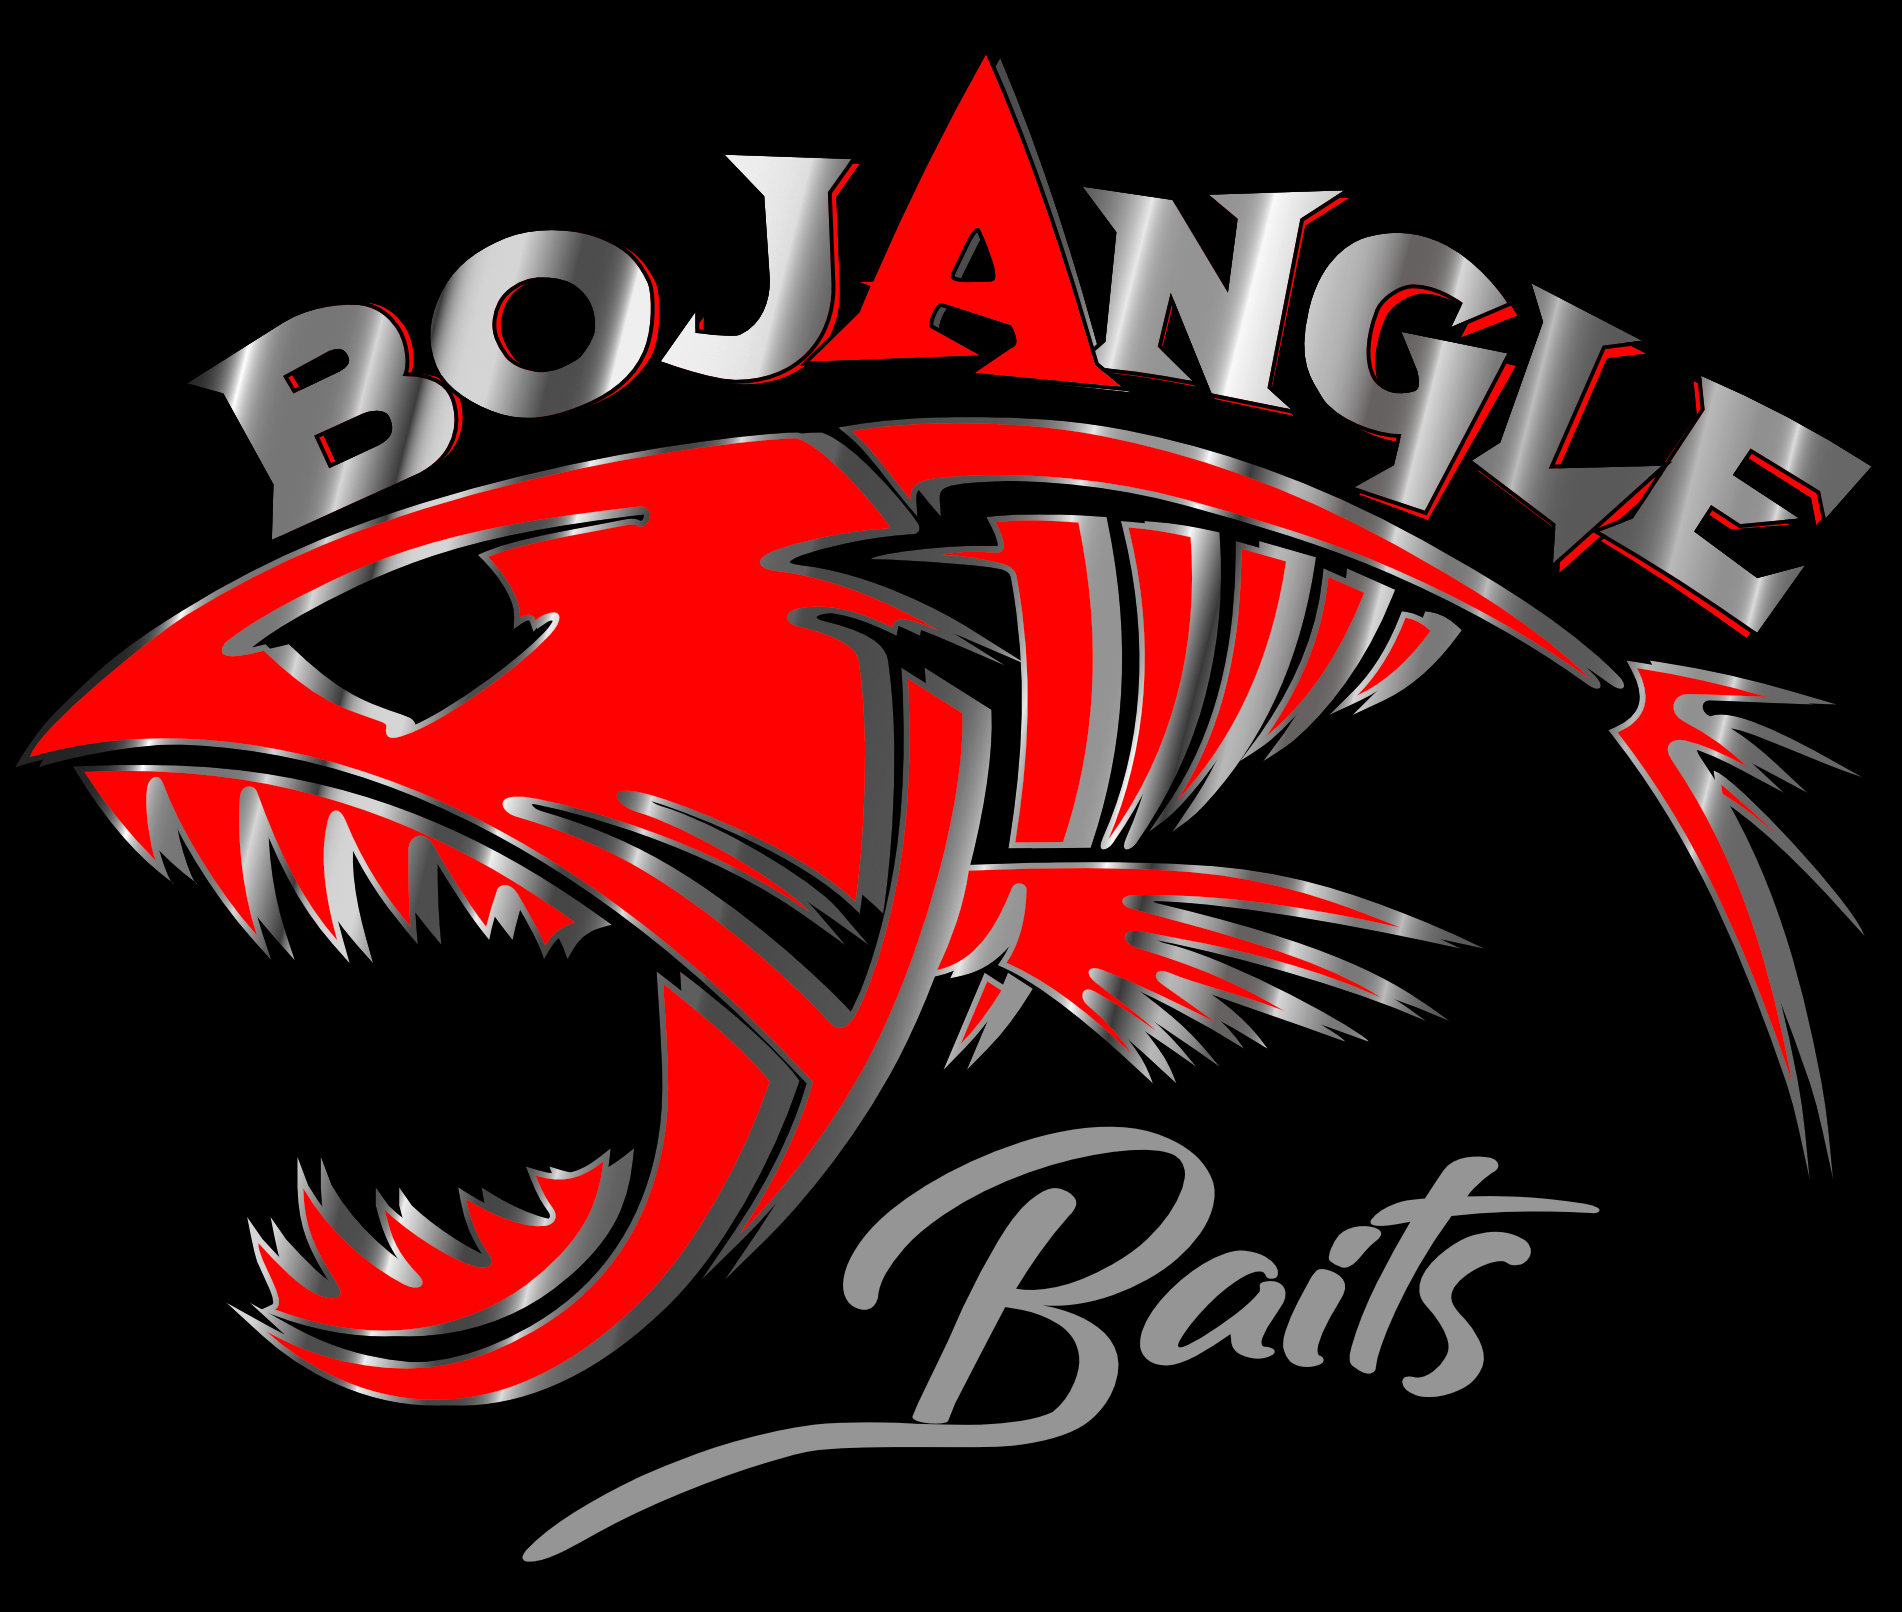 BoJangle Baits – Bojangle Baits